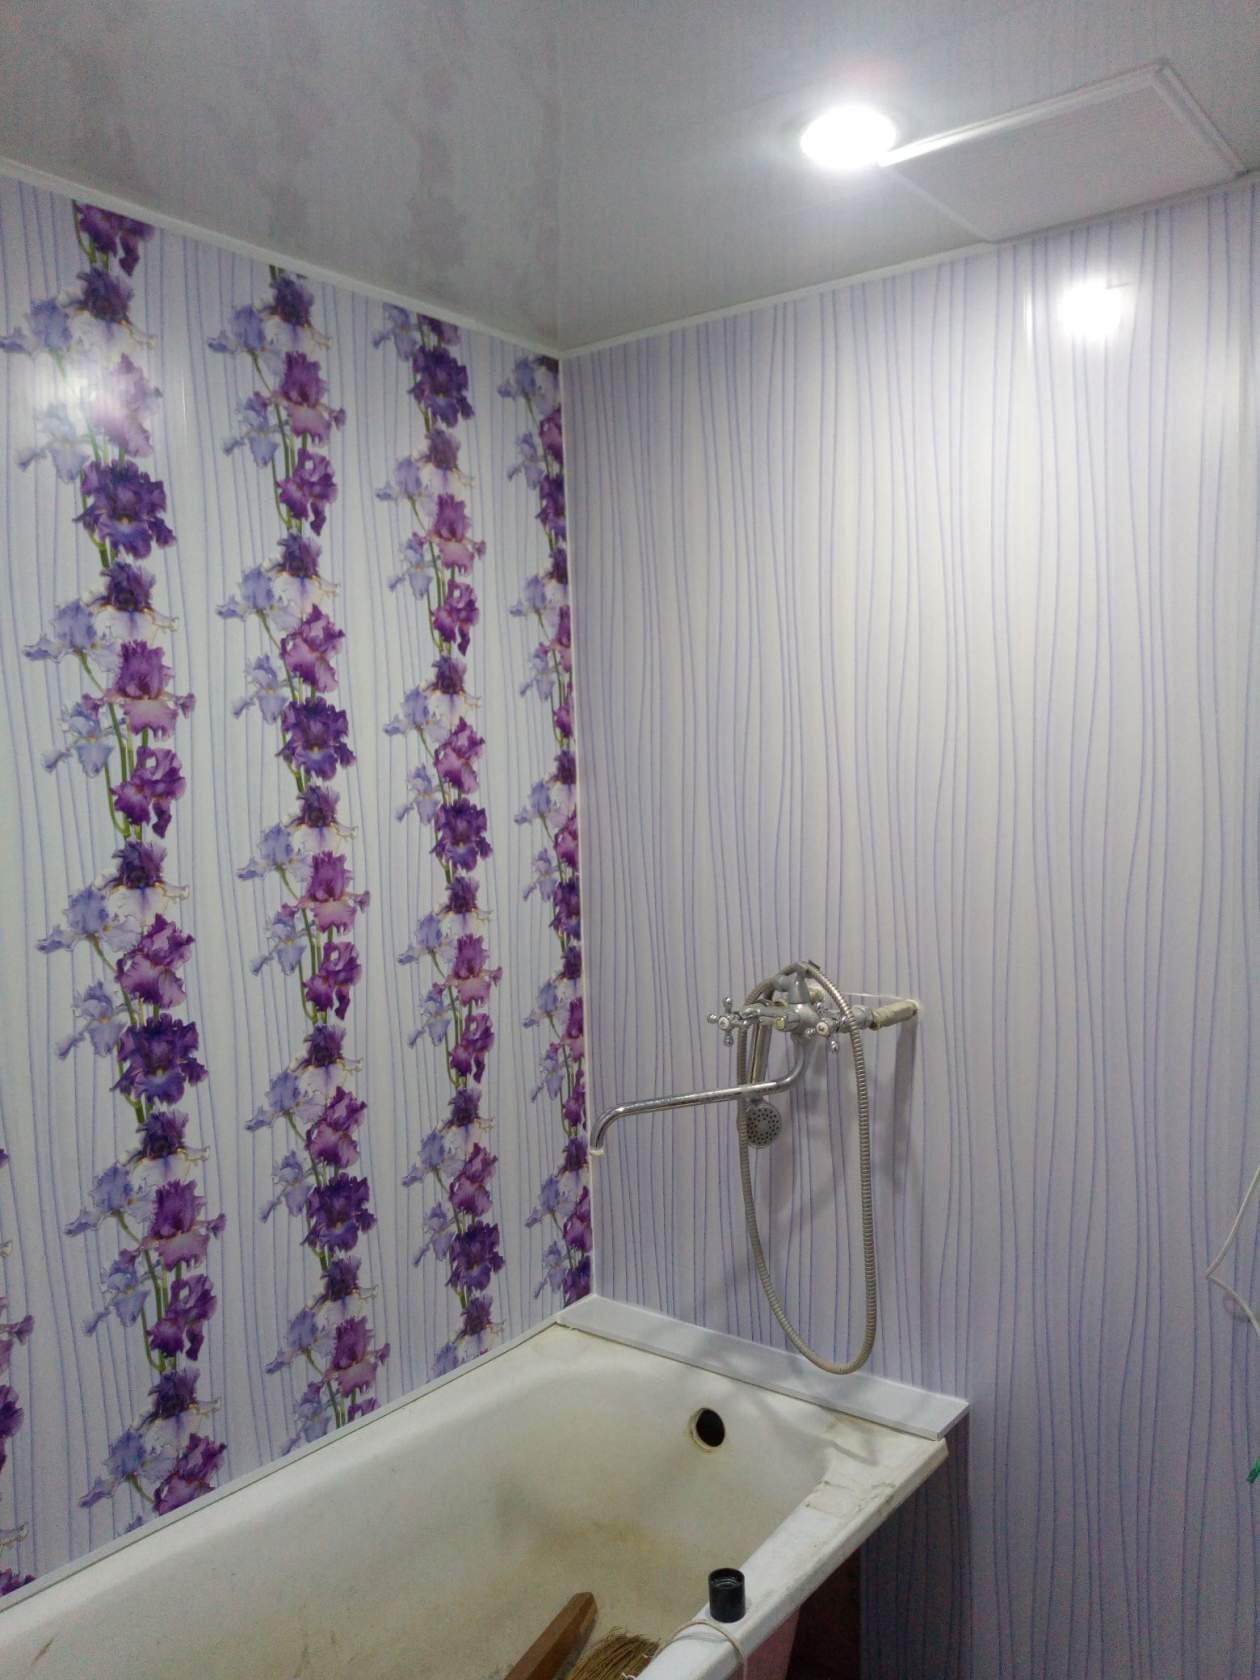 Панели пвх для ванной комнаты: плюсы и минусы, особенности выбора, дизайн